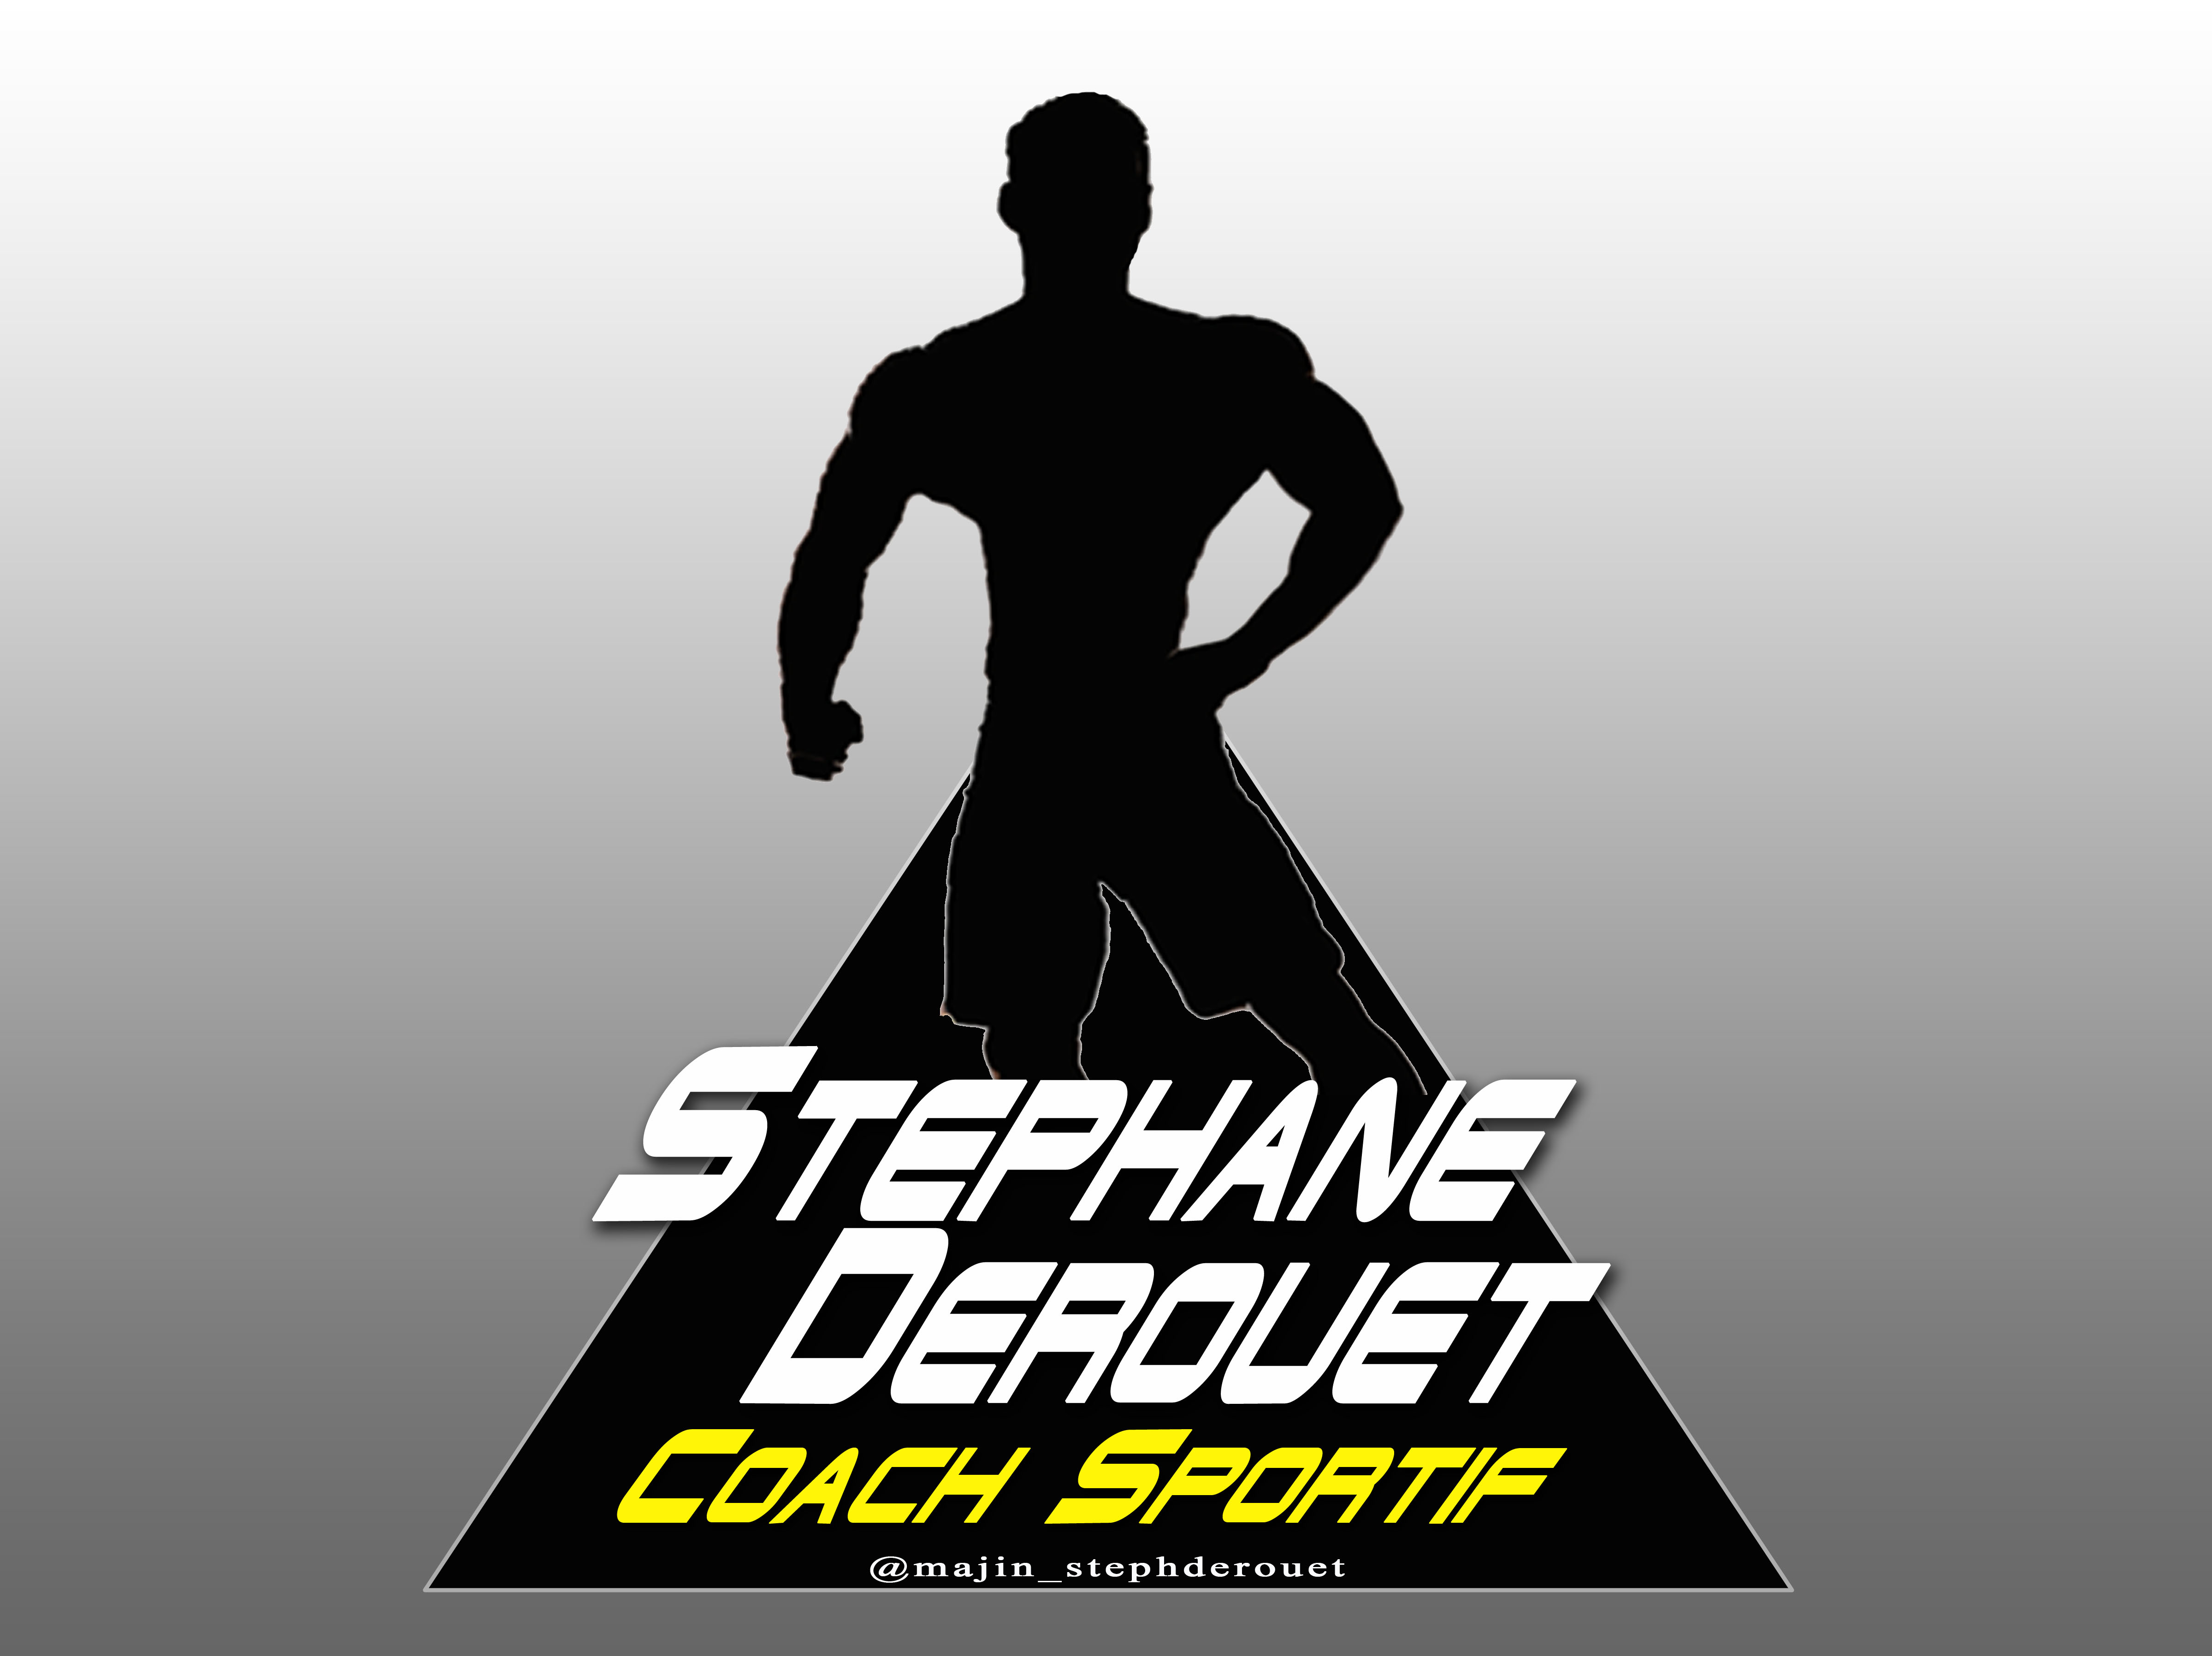 Coach Sportif - Stéphane Derouet